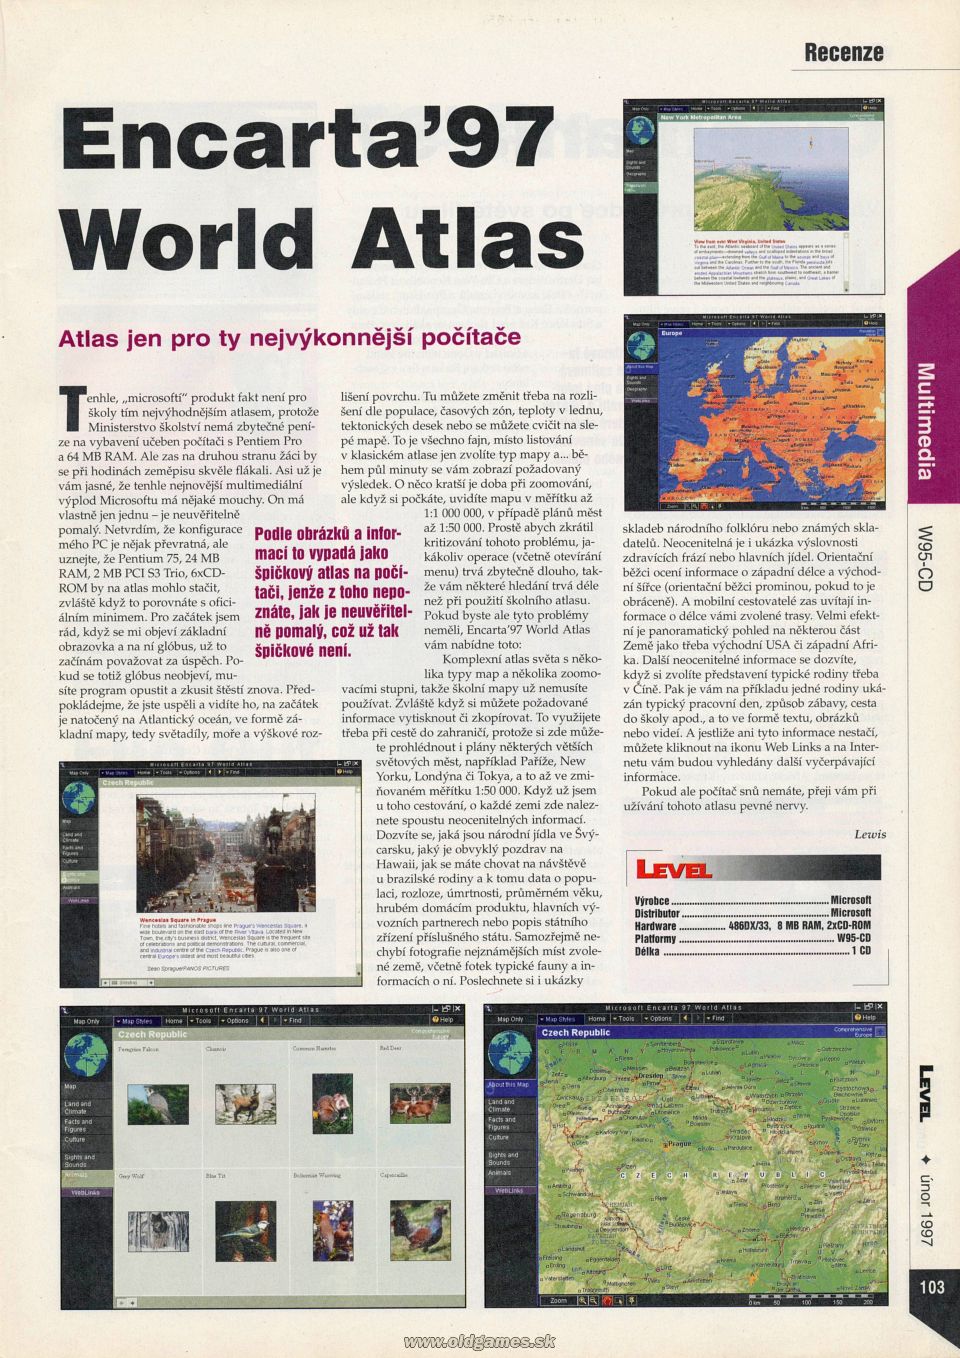 Multimedia: Encarta 97 World Atlas